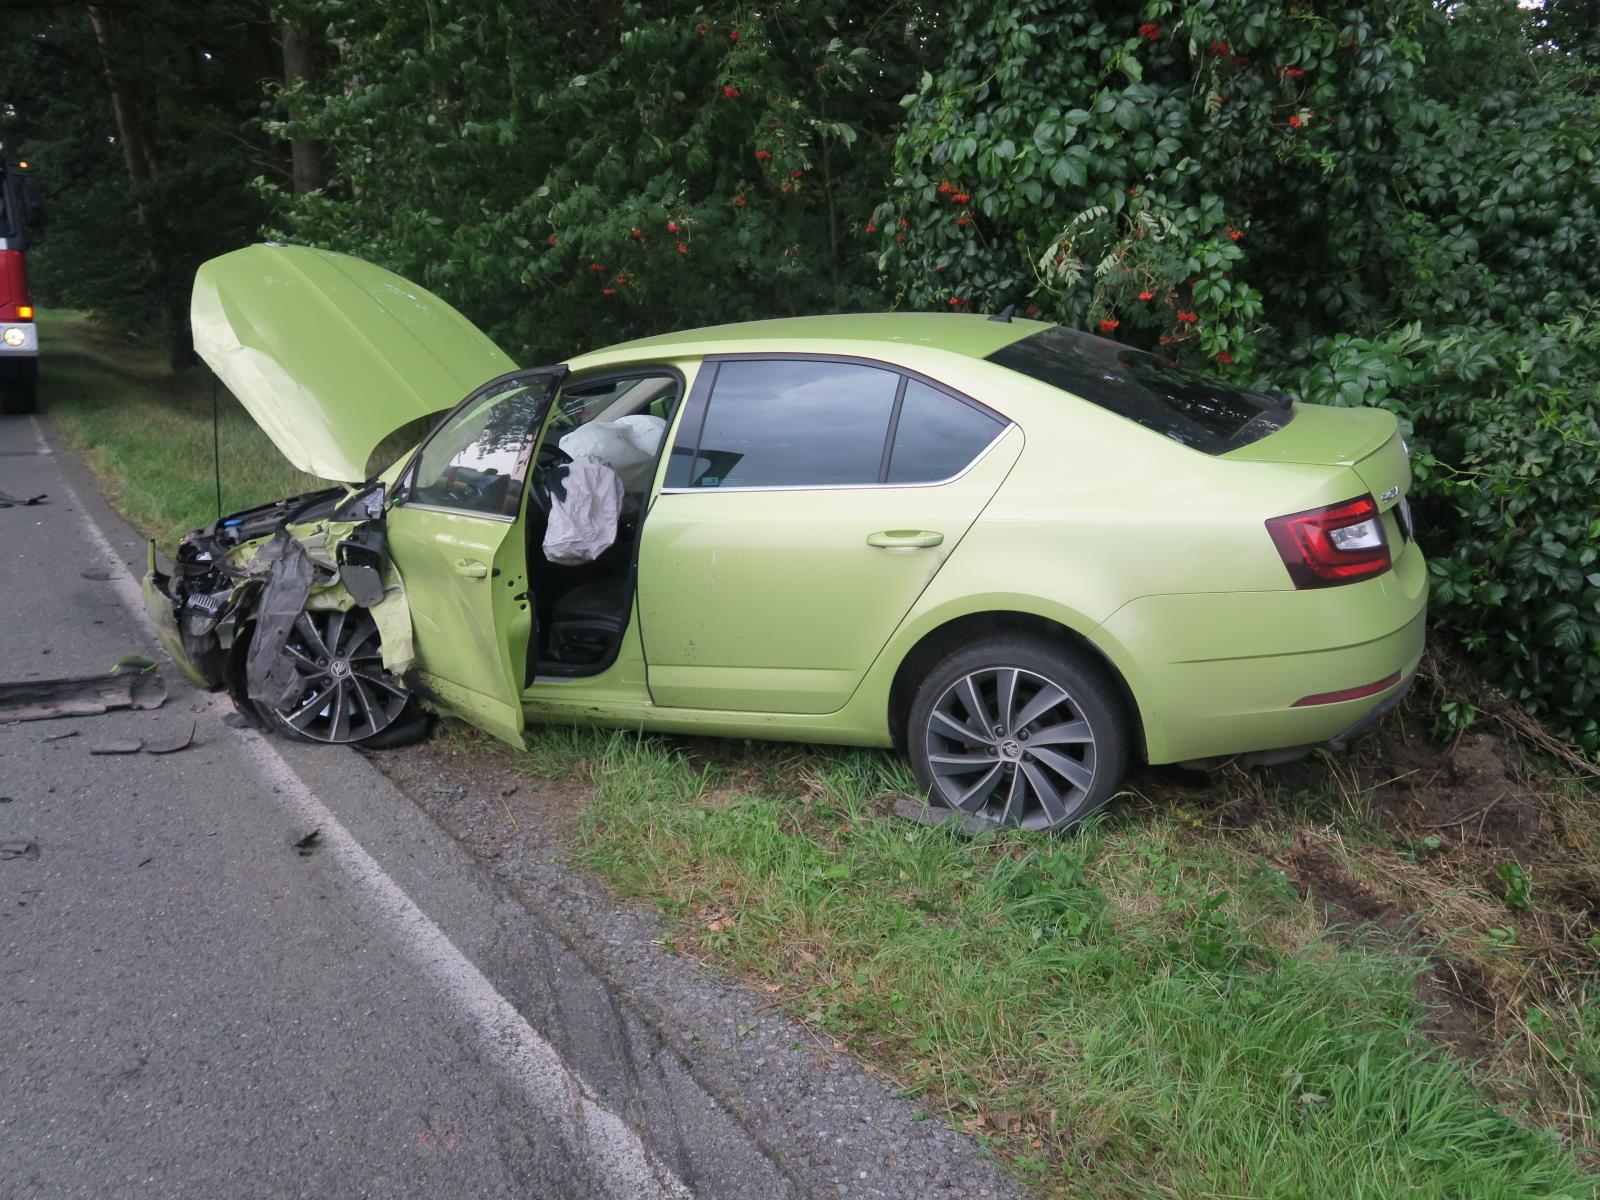 Dopravní nehoda - Všeruby - 15.08.2020